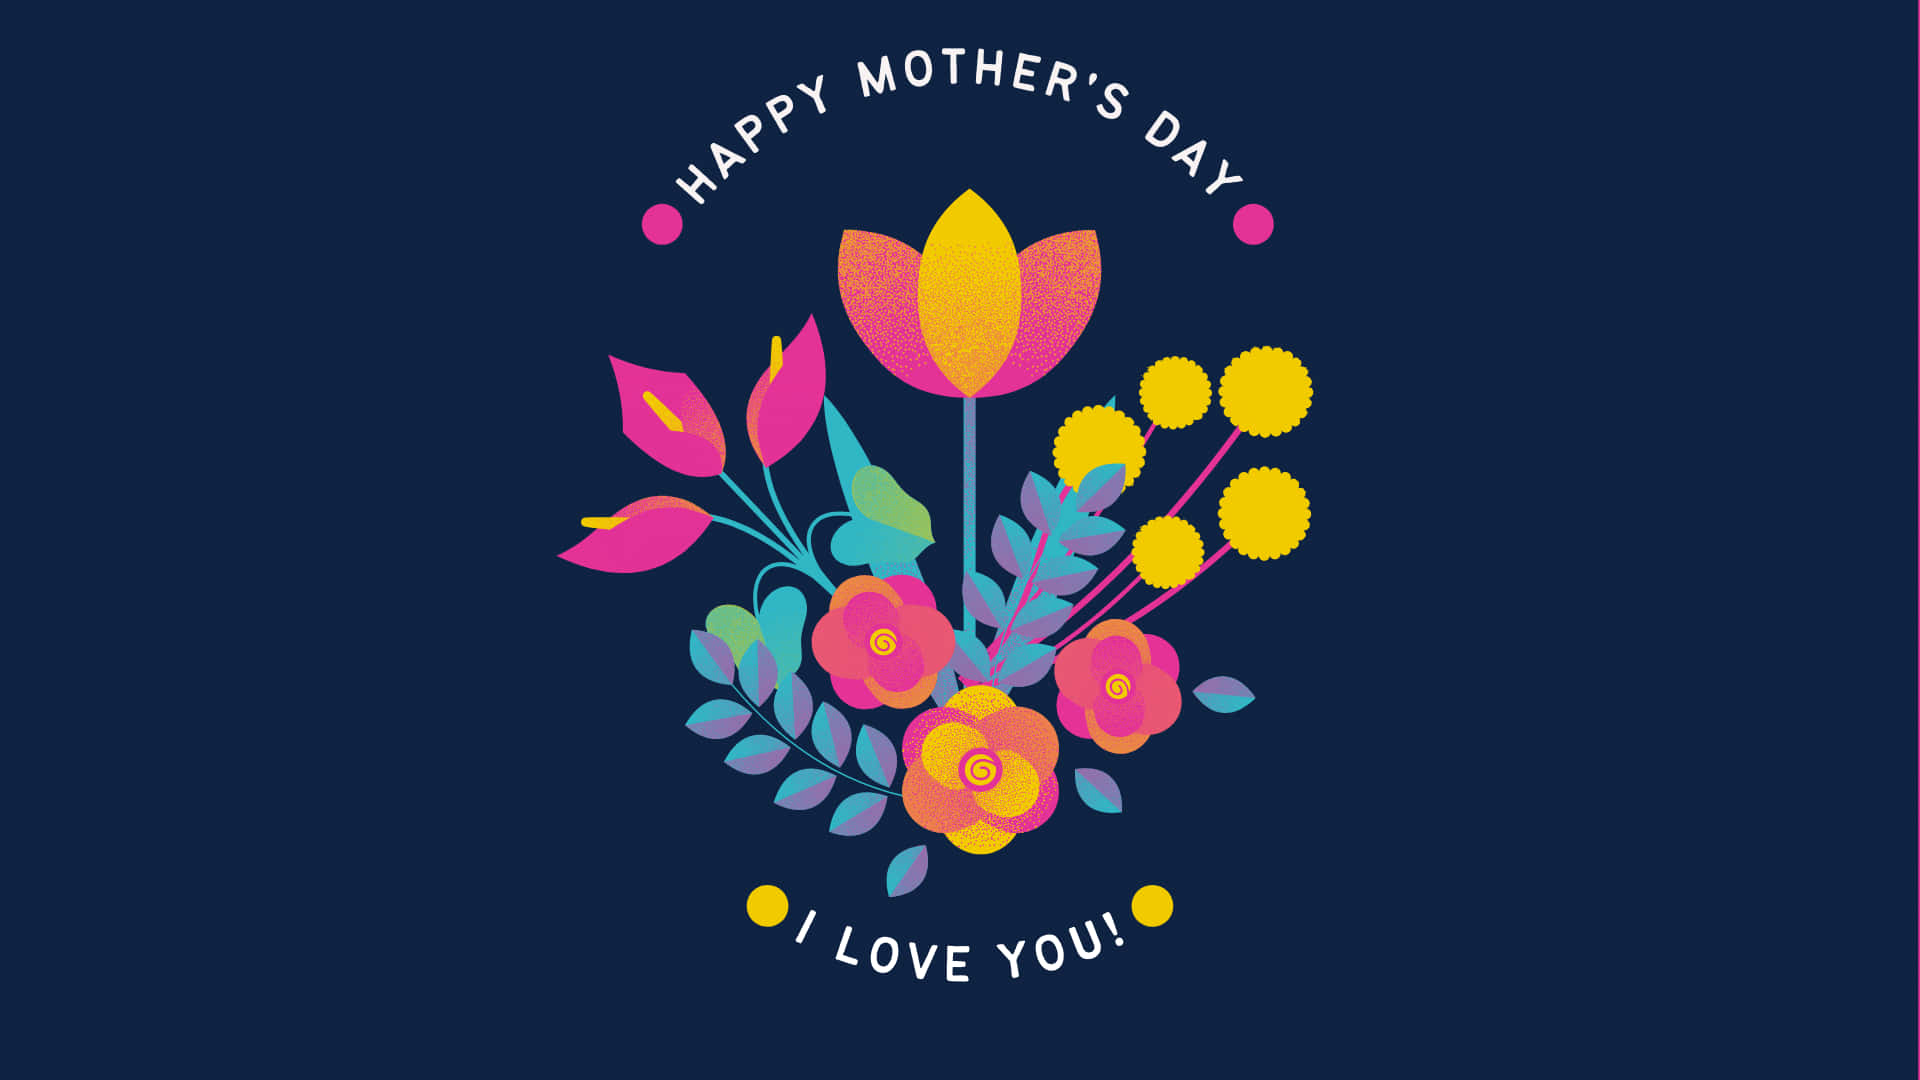 Feiernsie Diesen Muttertag Mit Liebe! Wallpaper